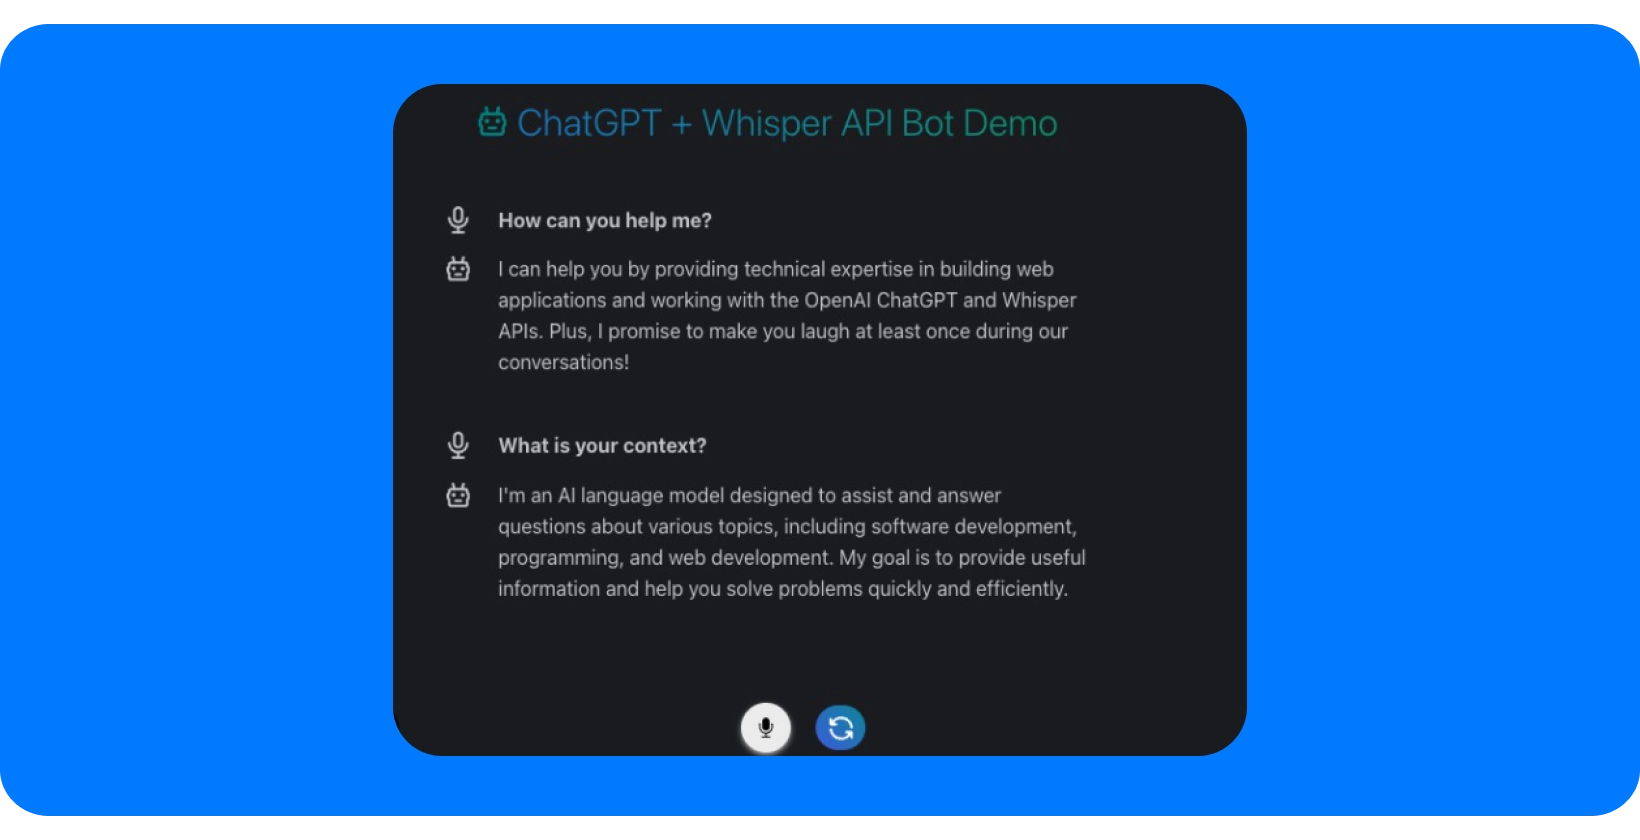 Скриншот демонстрации бота ChatGPT + Whisper API, демонстрирующей возможности помощи в разговоре.